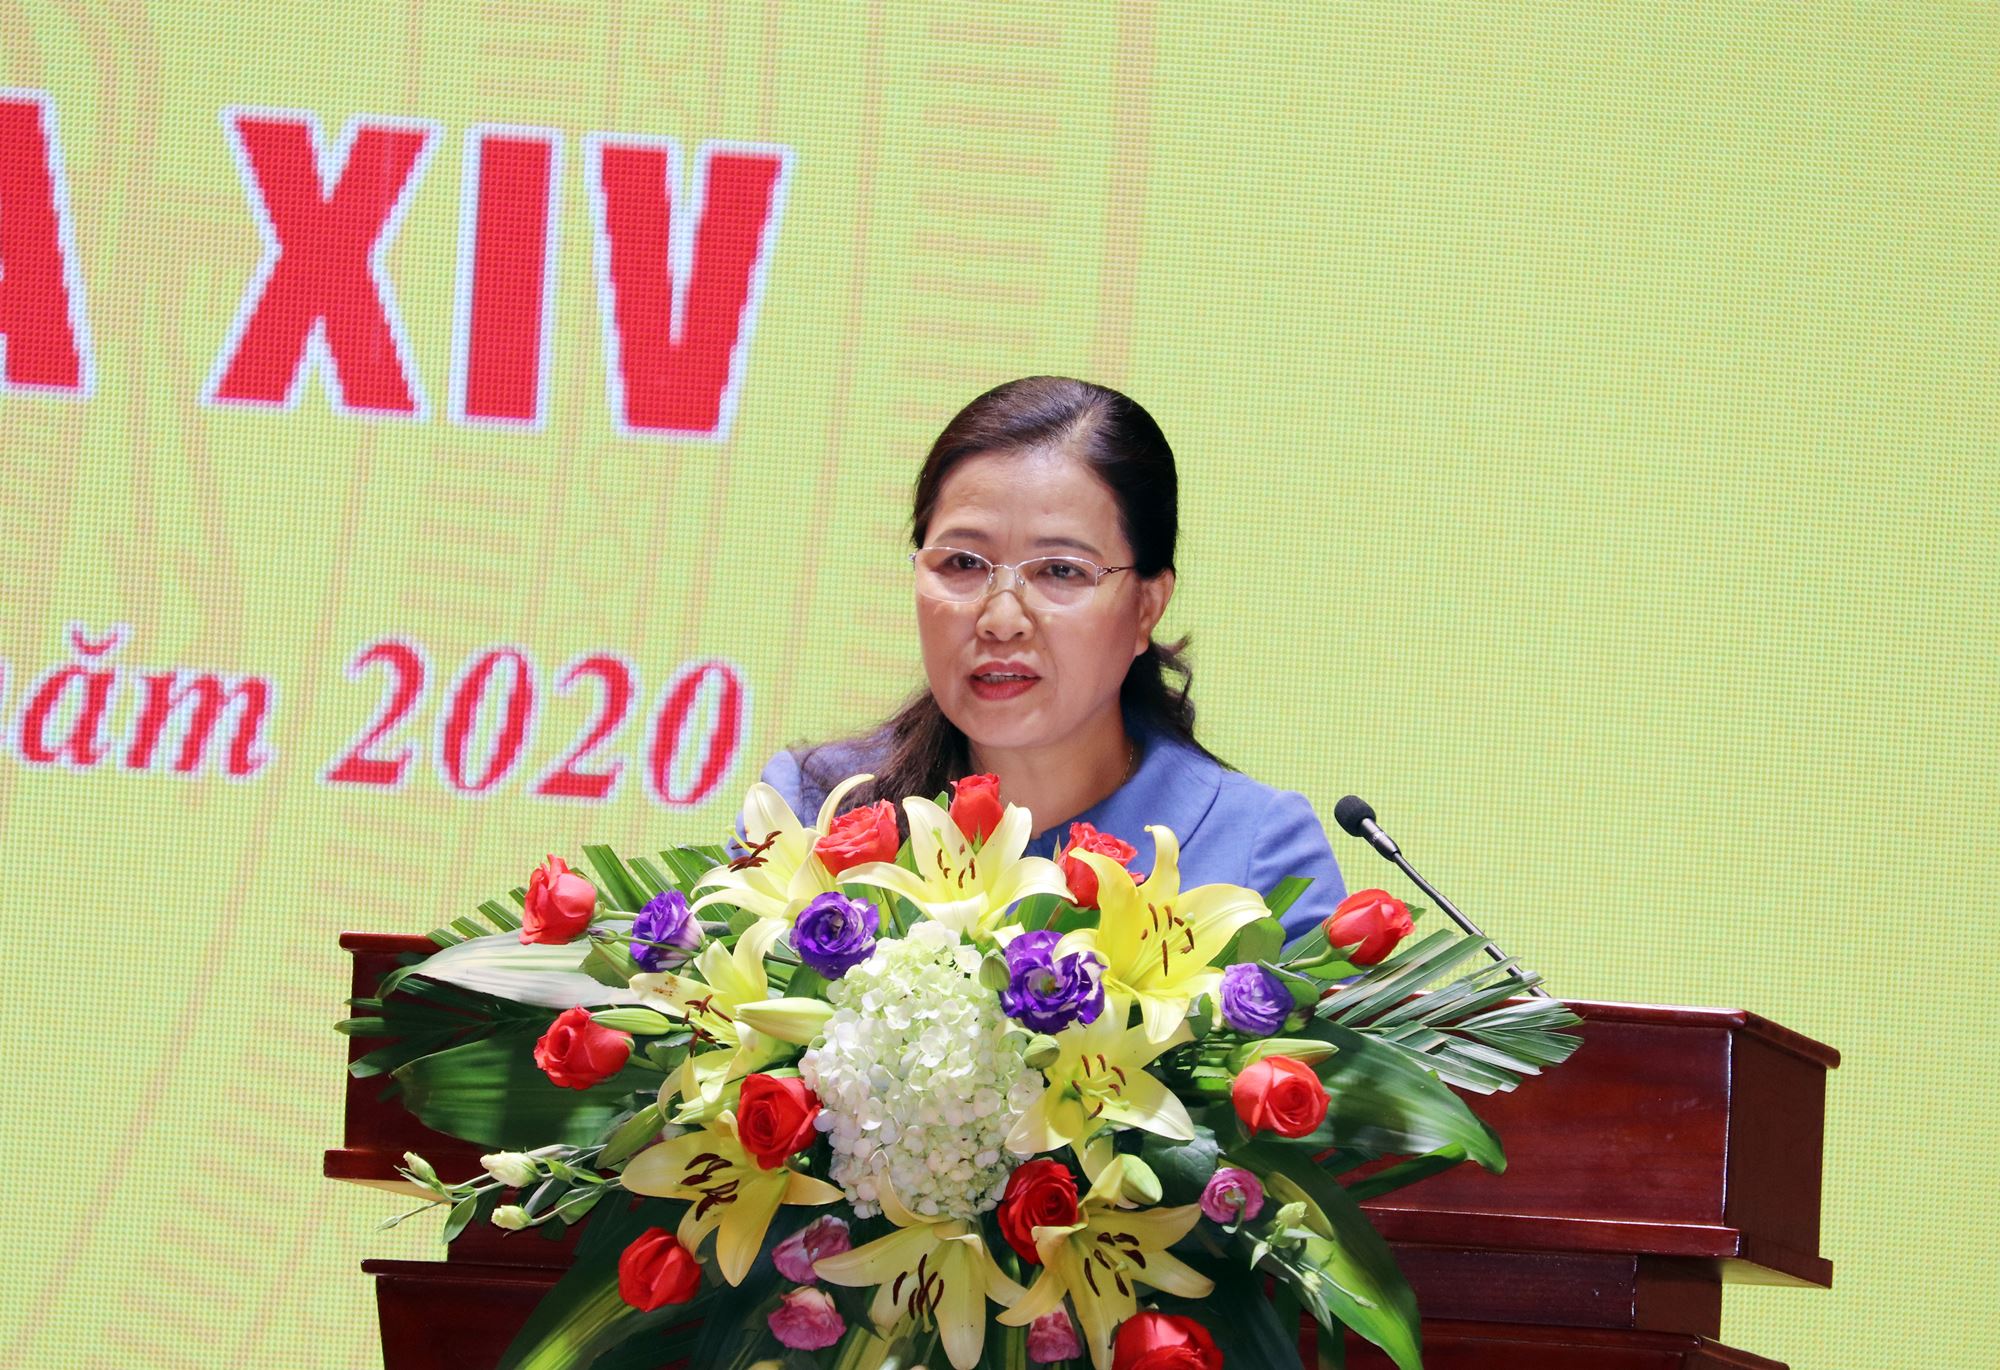 Đại biểu Đỗ Thị Lan, Ủy viên Thường trực Ủy ban về các vấn đề xã hội của Quốc hội khóa XIV, ĐBQH tỉnh Quảng Ninh 